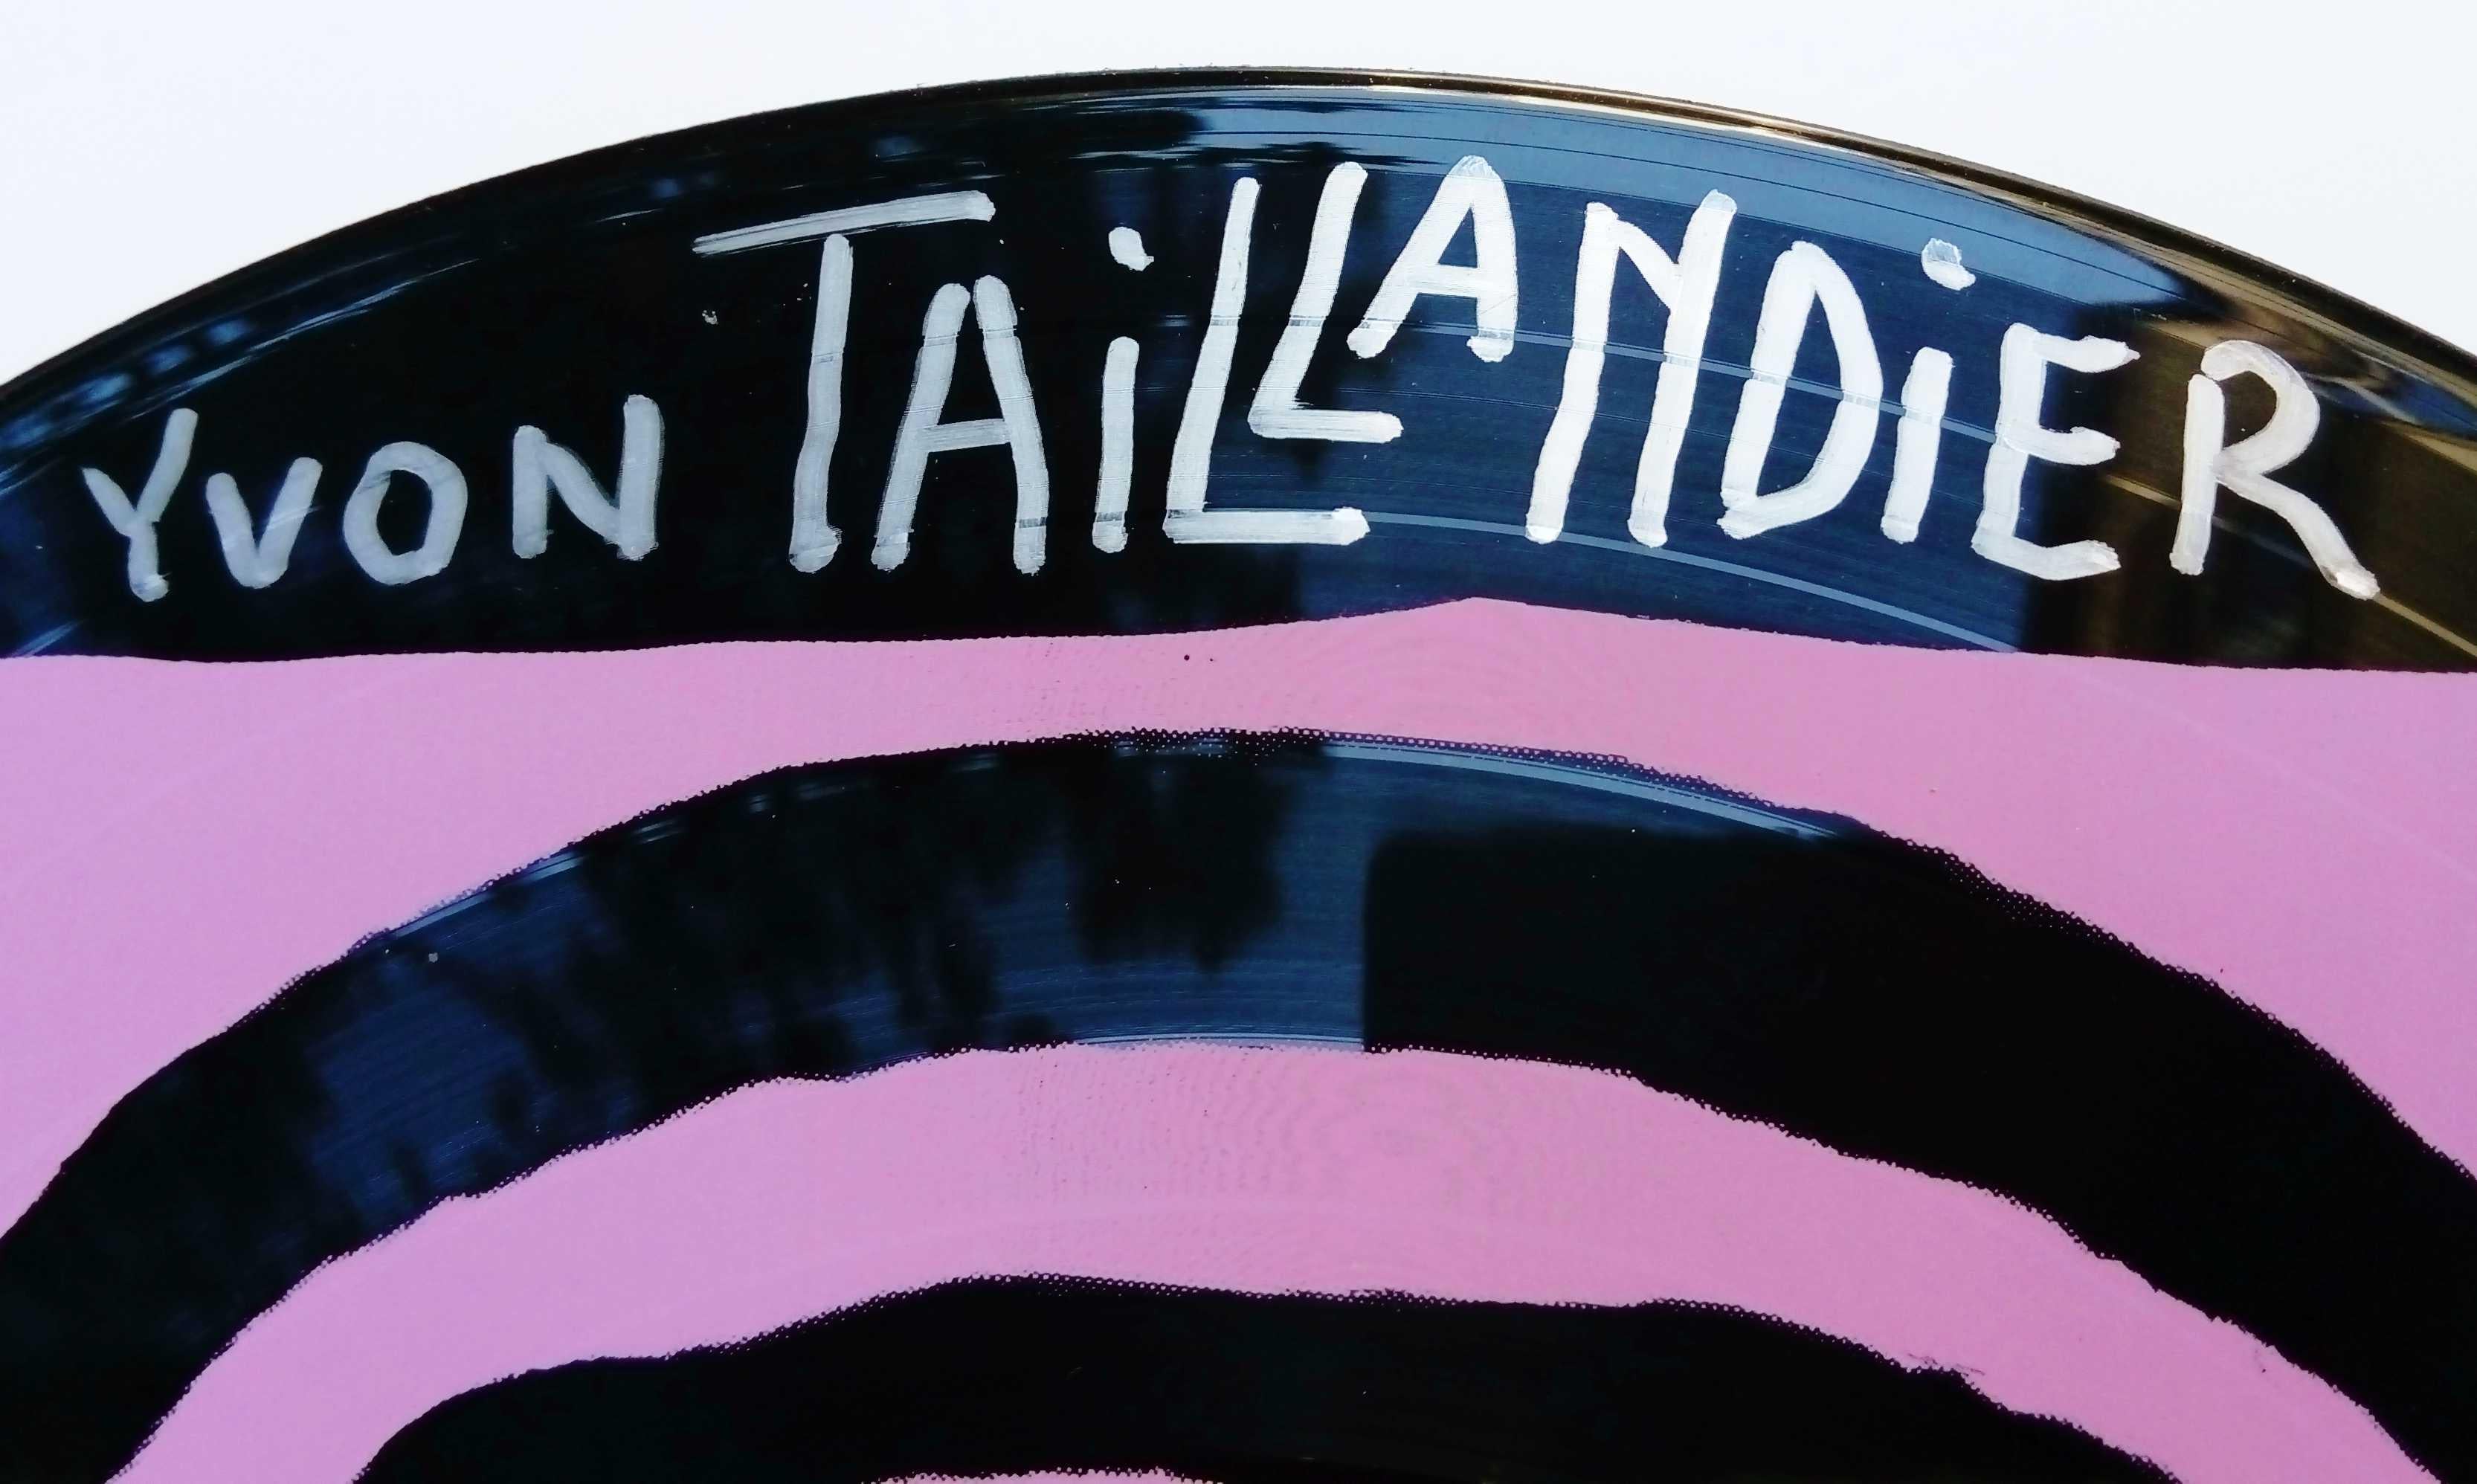 Magnifique sérigraphie sur vinyle  d'Yvon Taillandier, génie de la création, comme son monde imaginaire peuplé de personnages à l'anatomie folle.



disque vinyle 33 tours double face

Sérigraphie sur vinyle

Diamètre : 30 cm 

Œuvre signée au